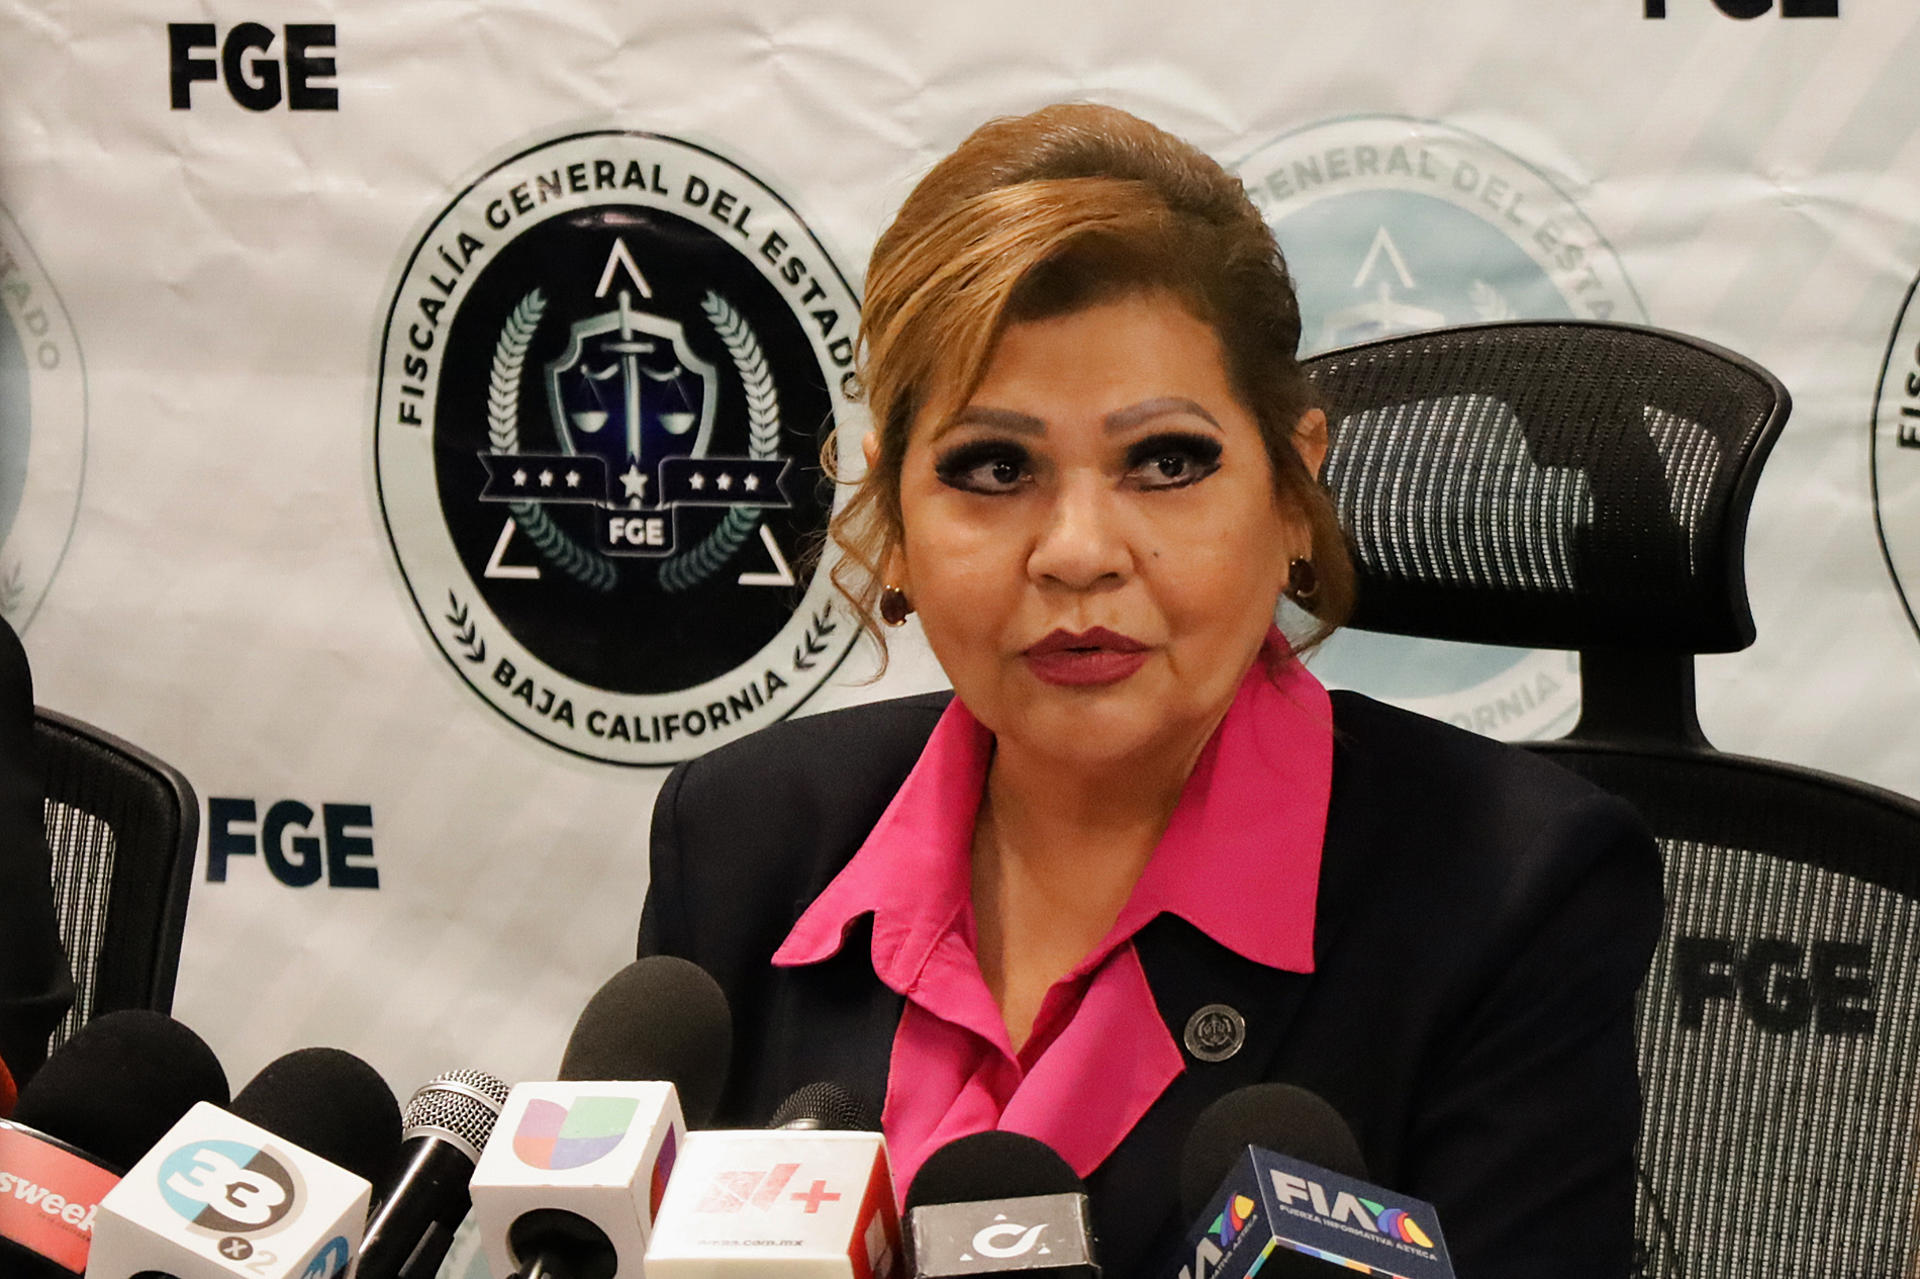 La titular de la Fiscalía General del Estado (FGE) de Baja California, María Elena Andrade Ramírez habla durante una conferencia de prensa este martes, en la ciudad de Tijuana (México).  EFE/Joebeth Terriquez